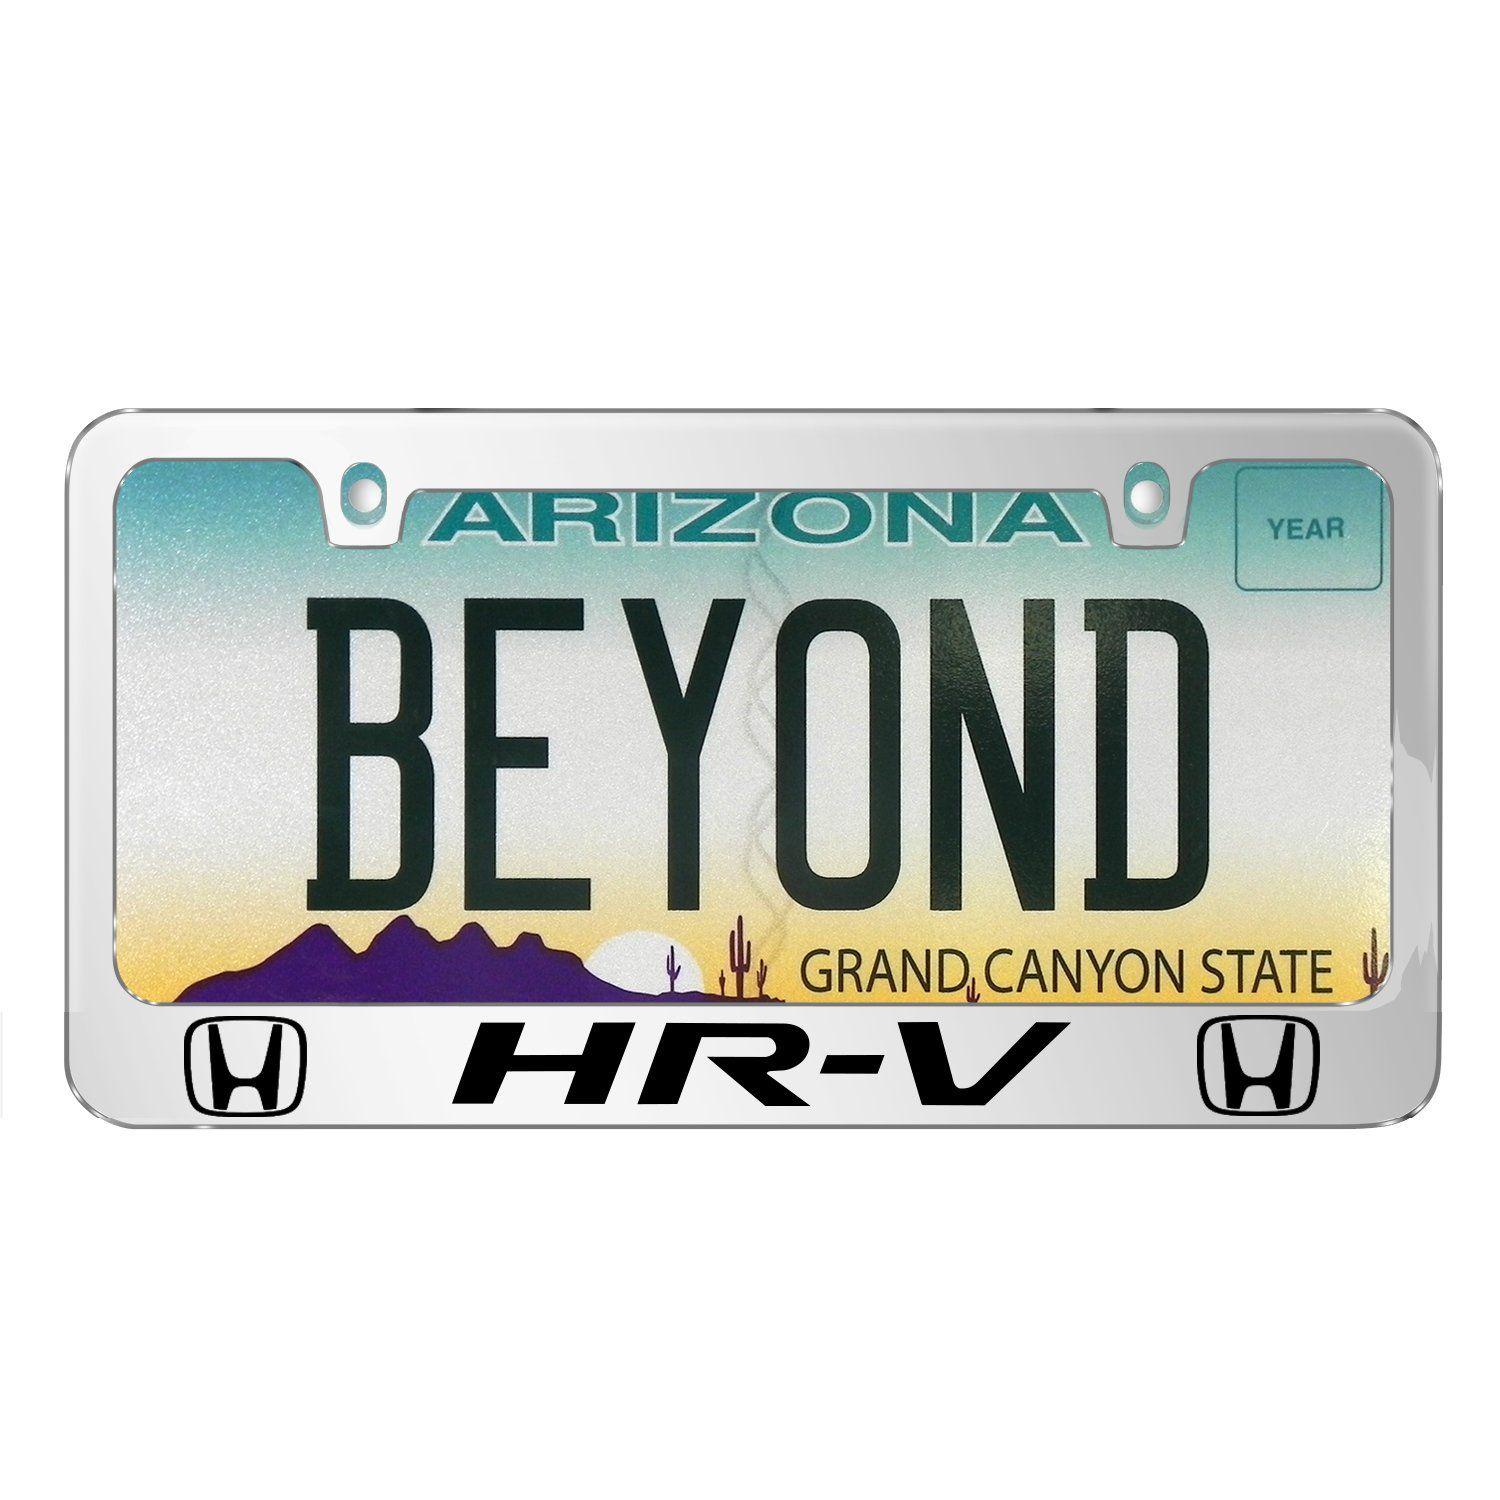 Hr-V Logo - Amazon.com: iPick Image Honda HR-V Dual Logo Mirror Chrome Metal ...